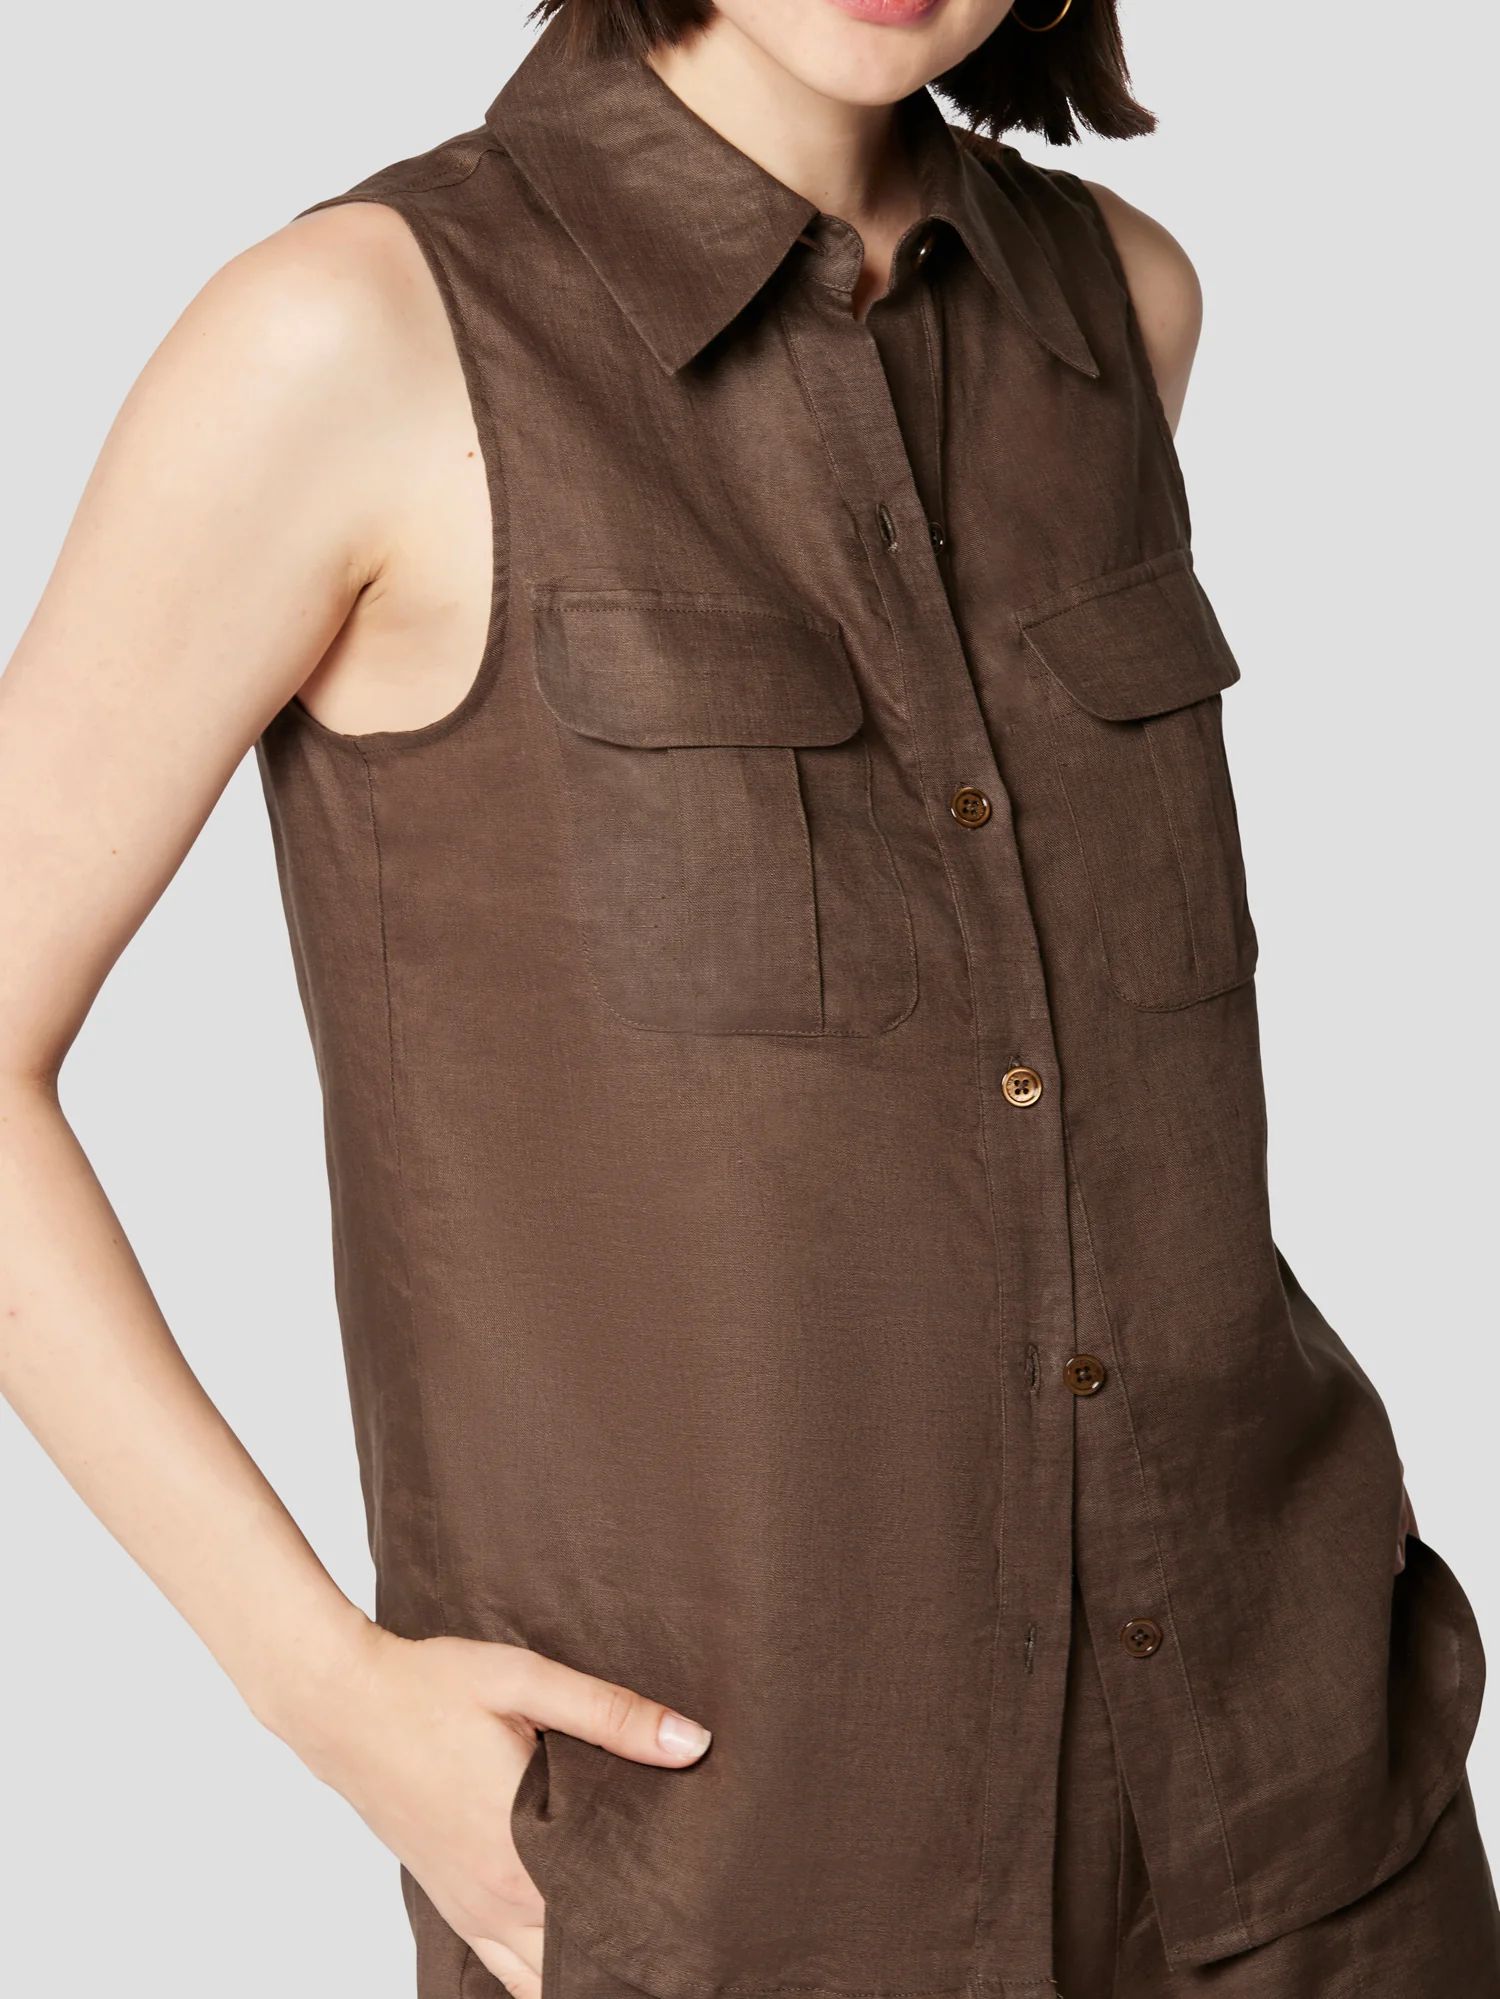 camila sleeveless linen shirt | Equipment